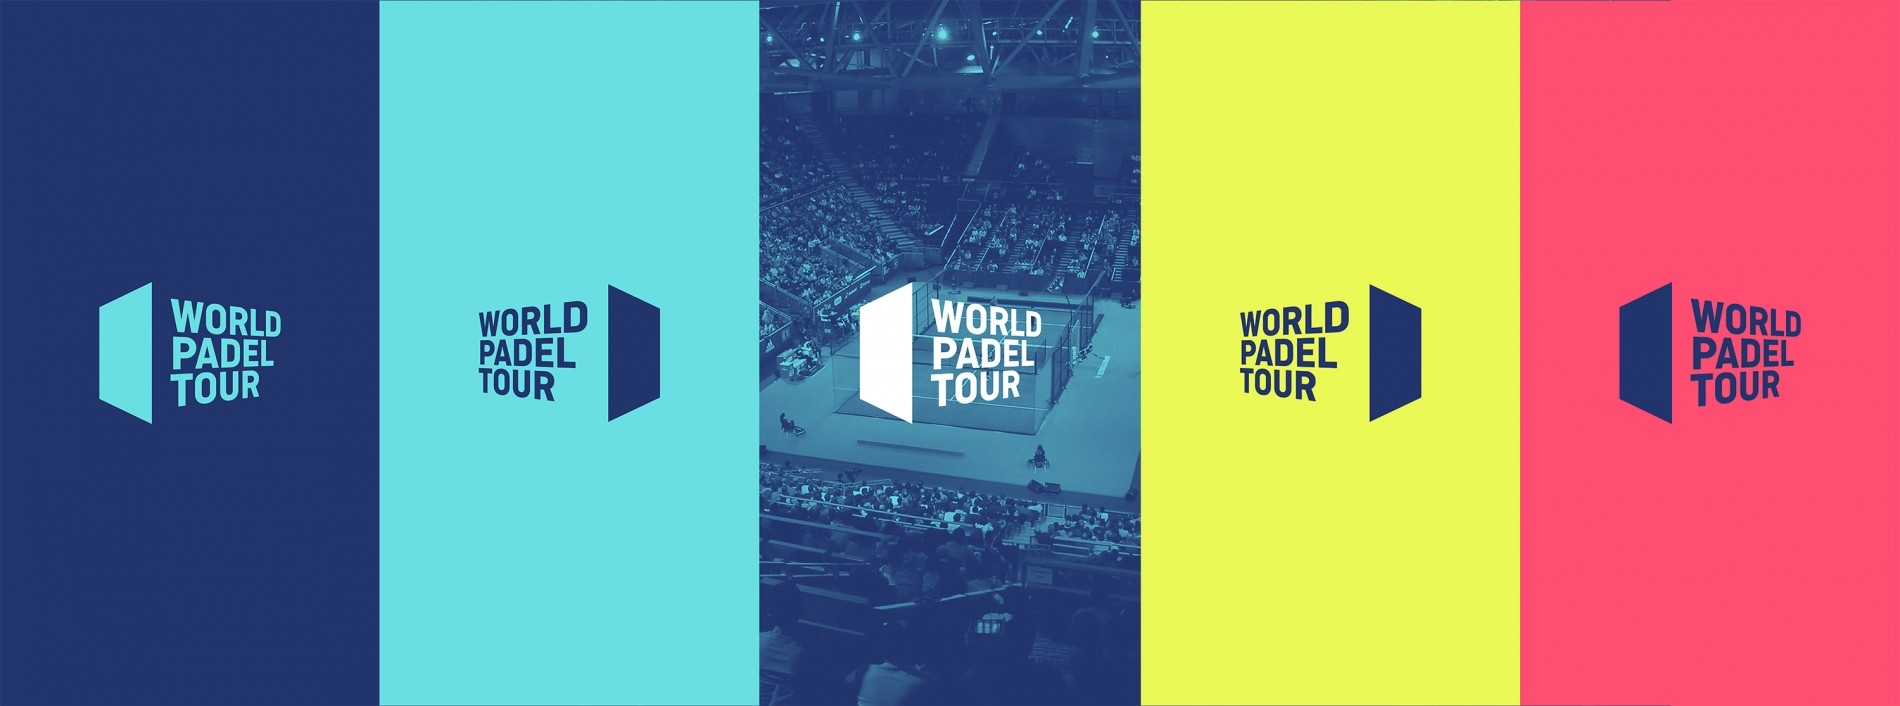 Nuevos logos WPT 2019